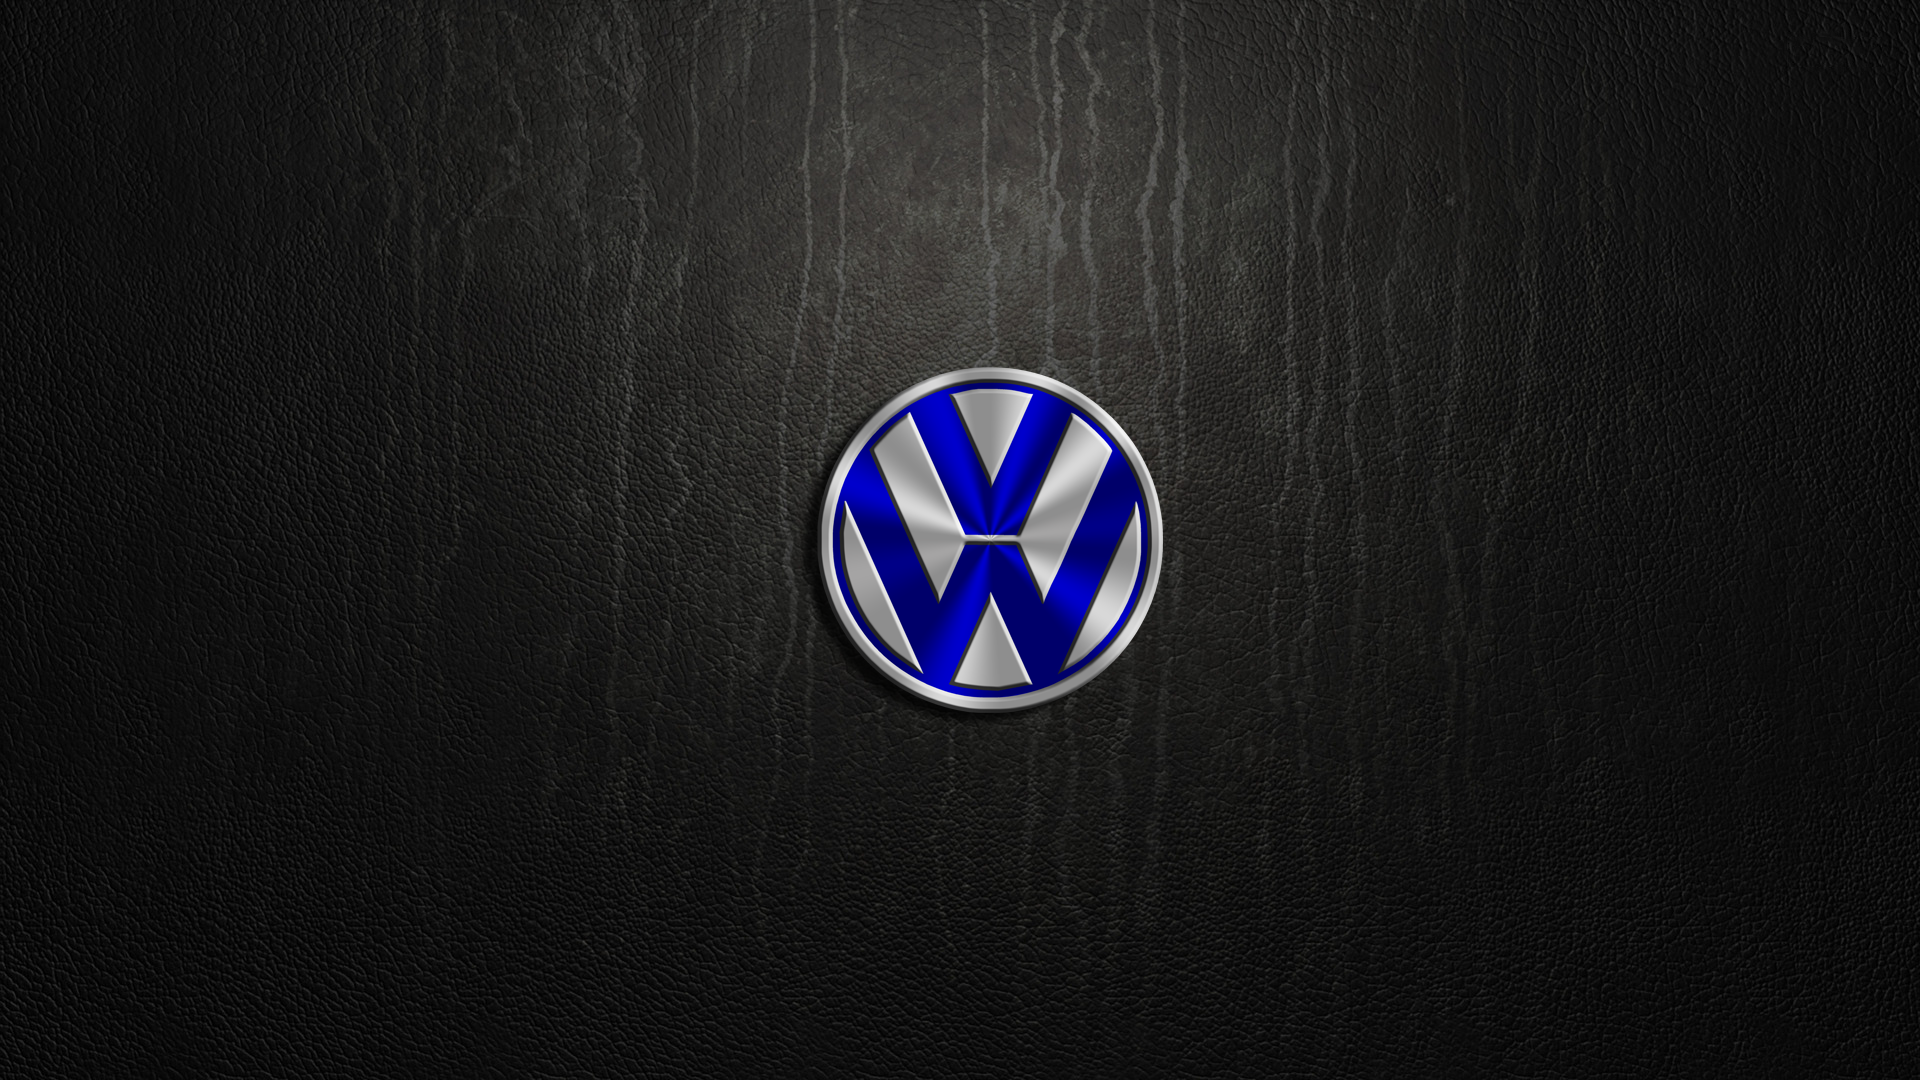 Volkswagen Wallpapers Hintergrnde 1920x1080 ID400499 1920x1080